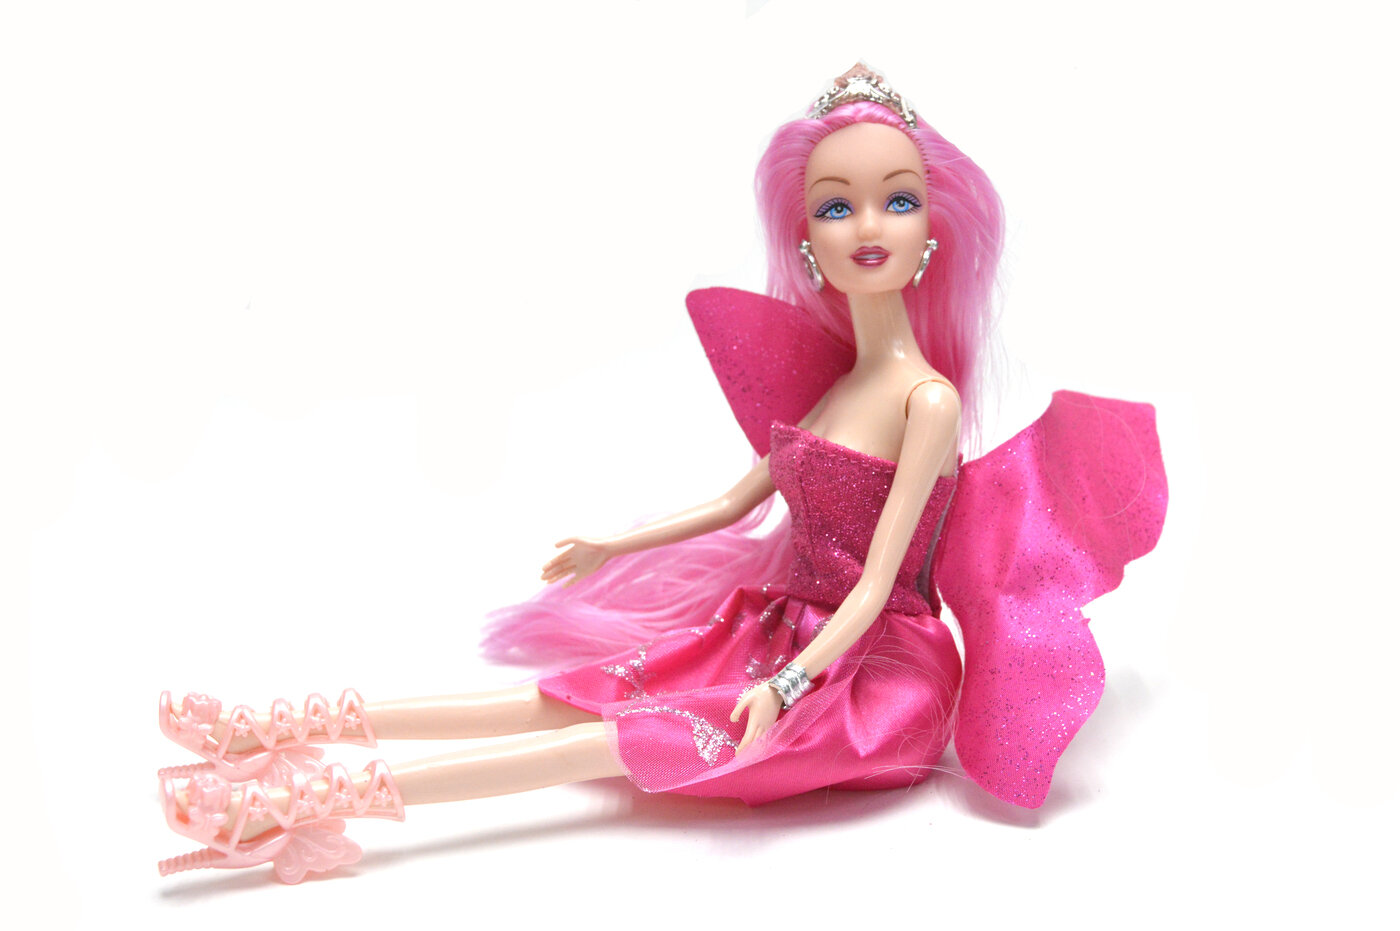 Кукла Фея цвет платья розовый, 29 см. Подарите девочкам куклу.